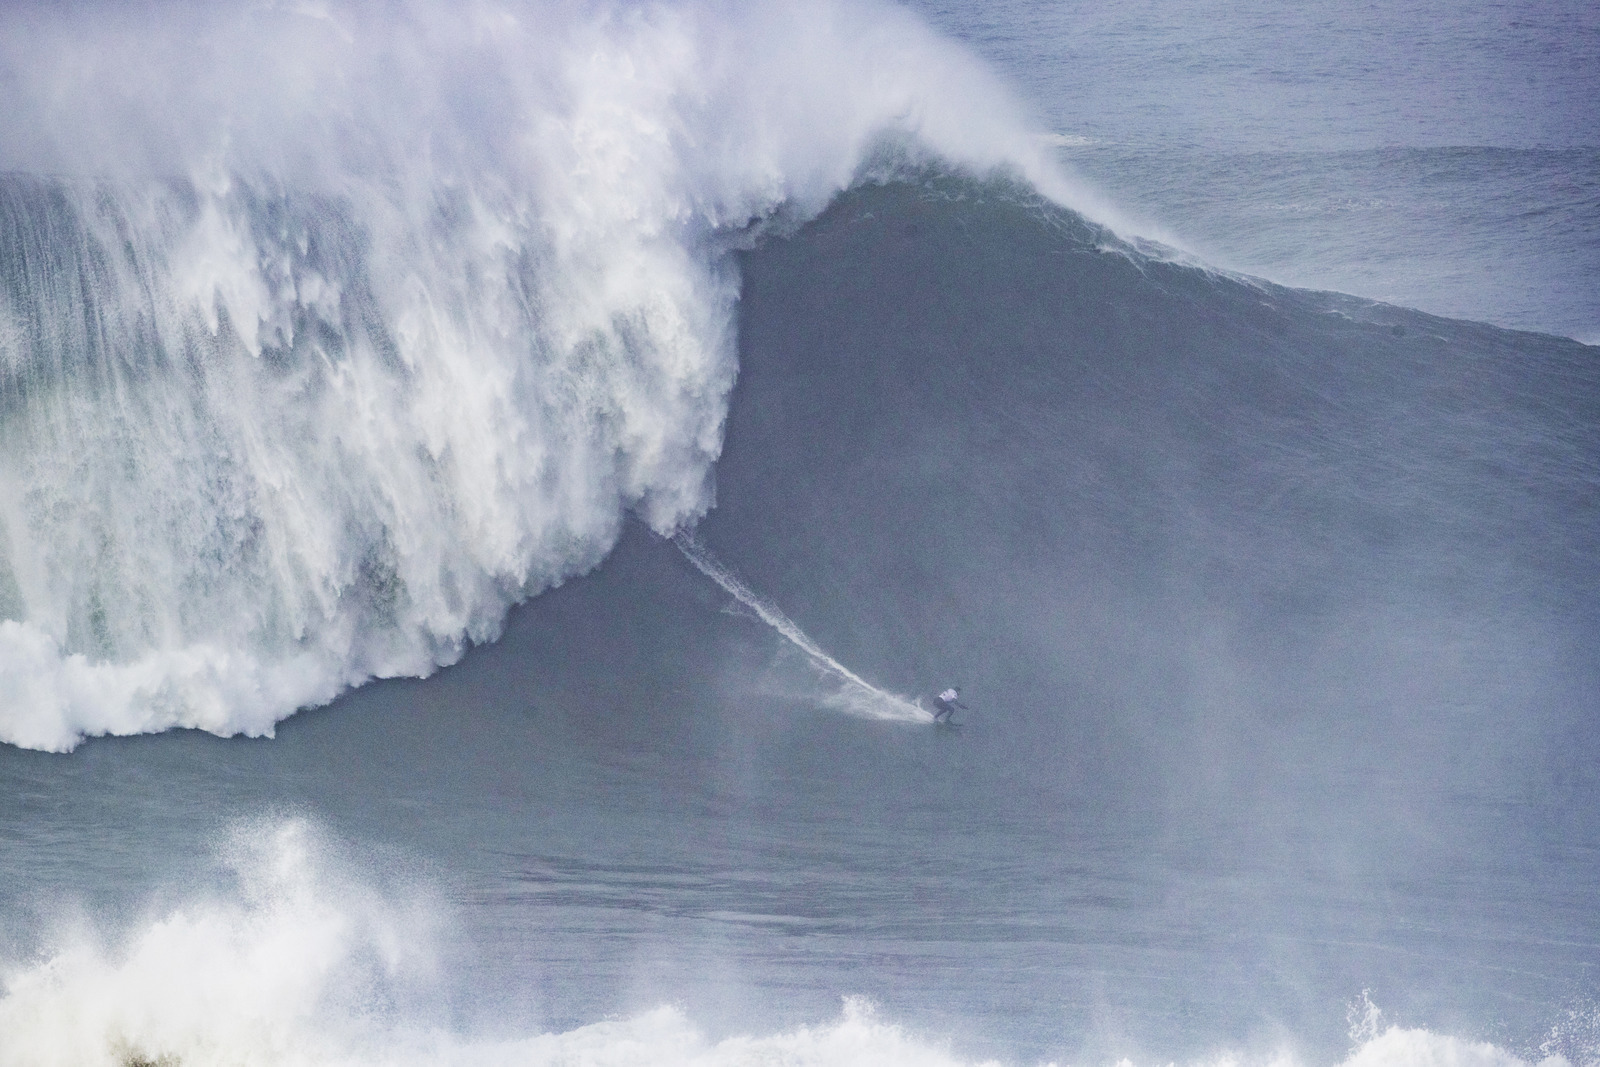 Maya Gabeira quebra próprio recorde mundial de maior onda surfada: 22,4 metros